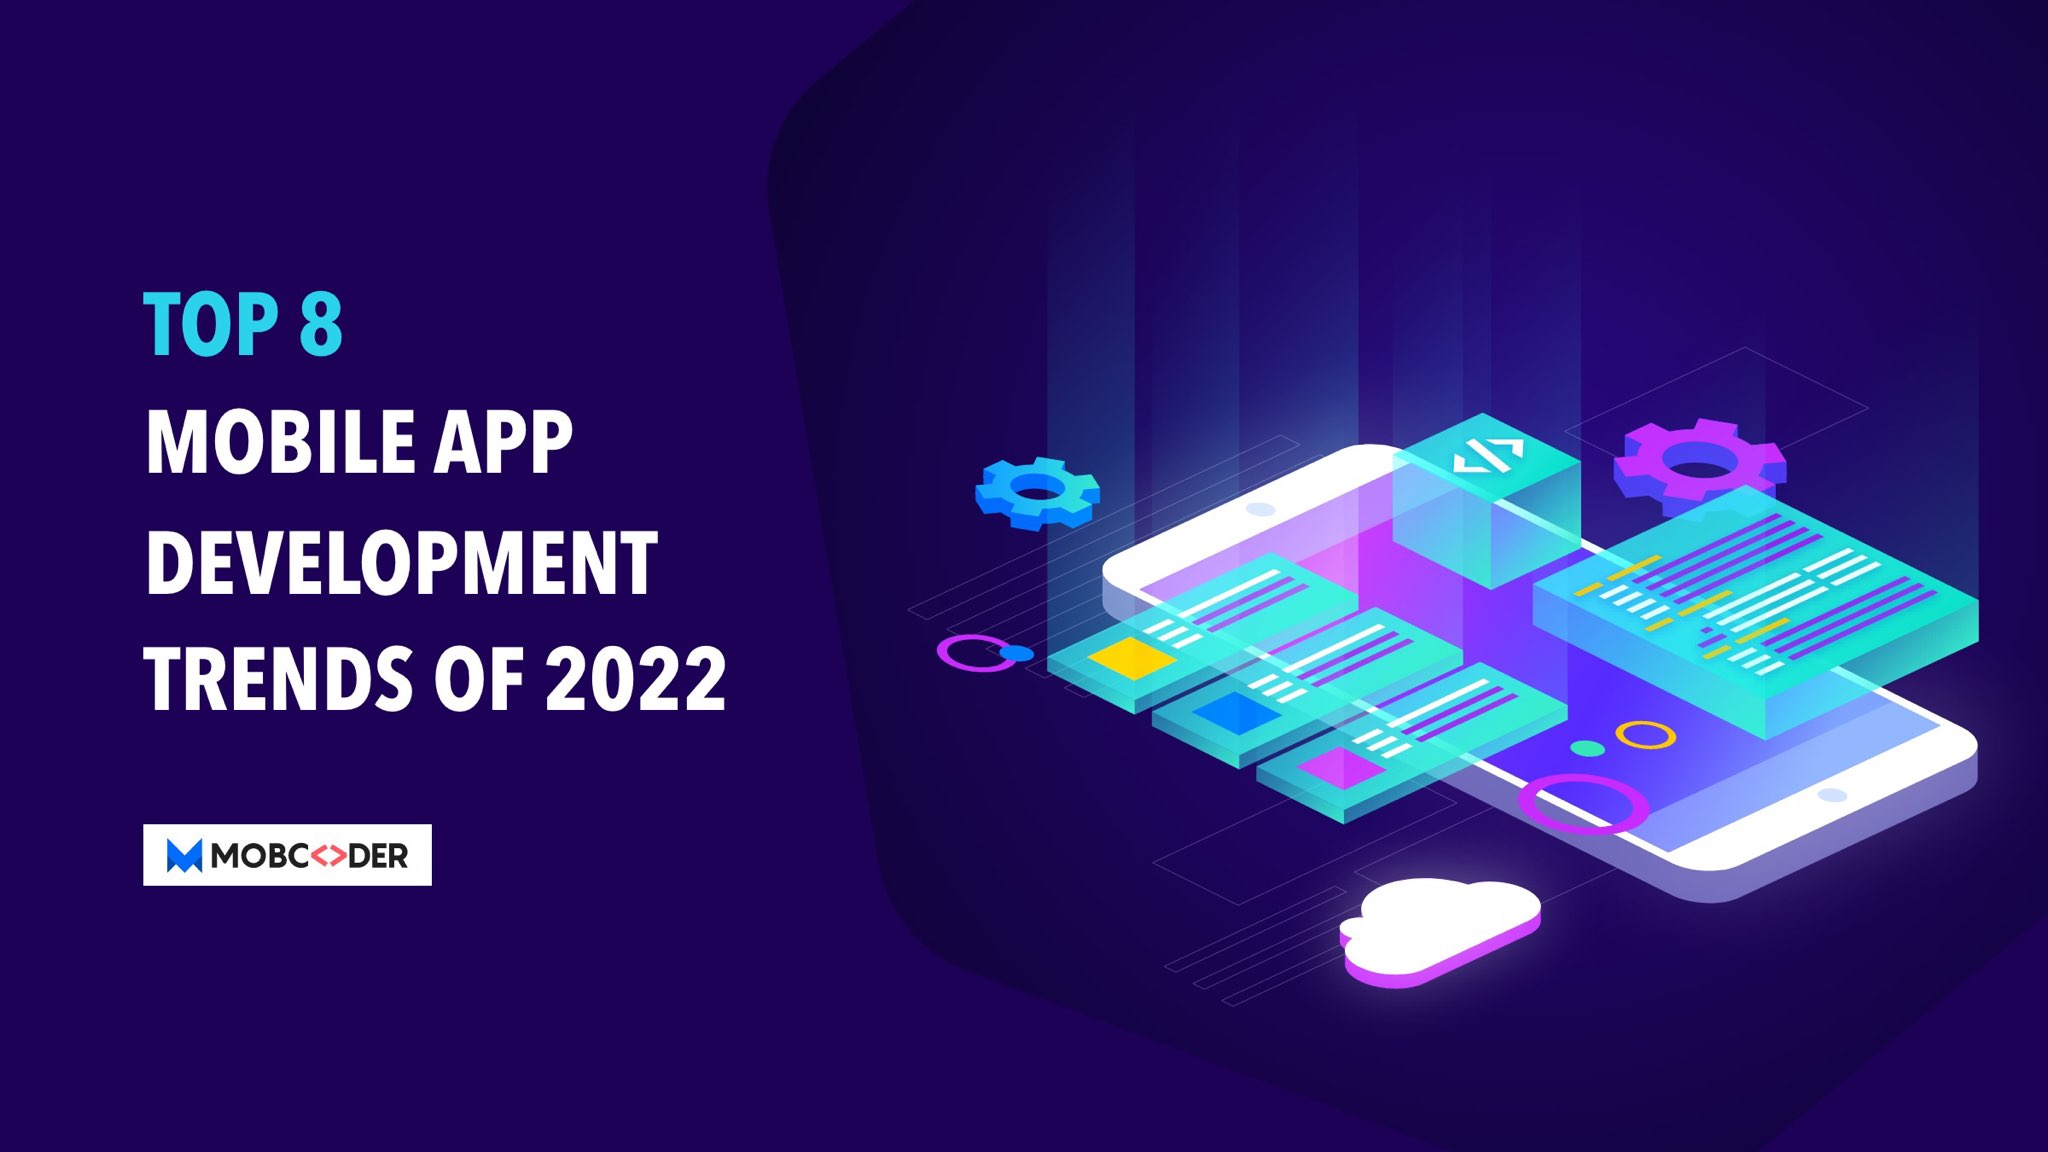 Top 8 Mobile App Development Trends of 2022